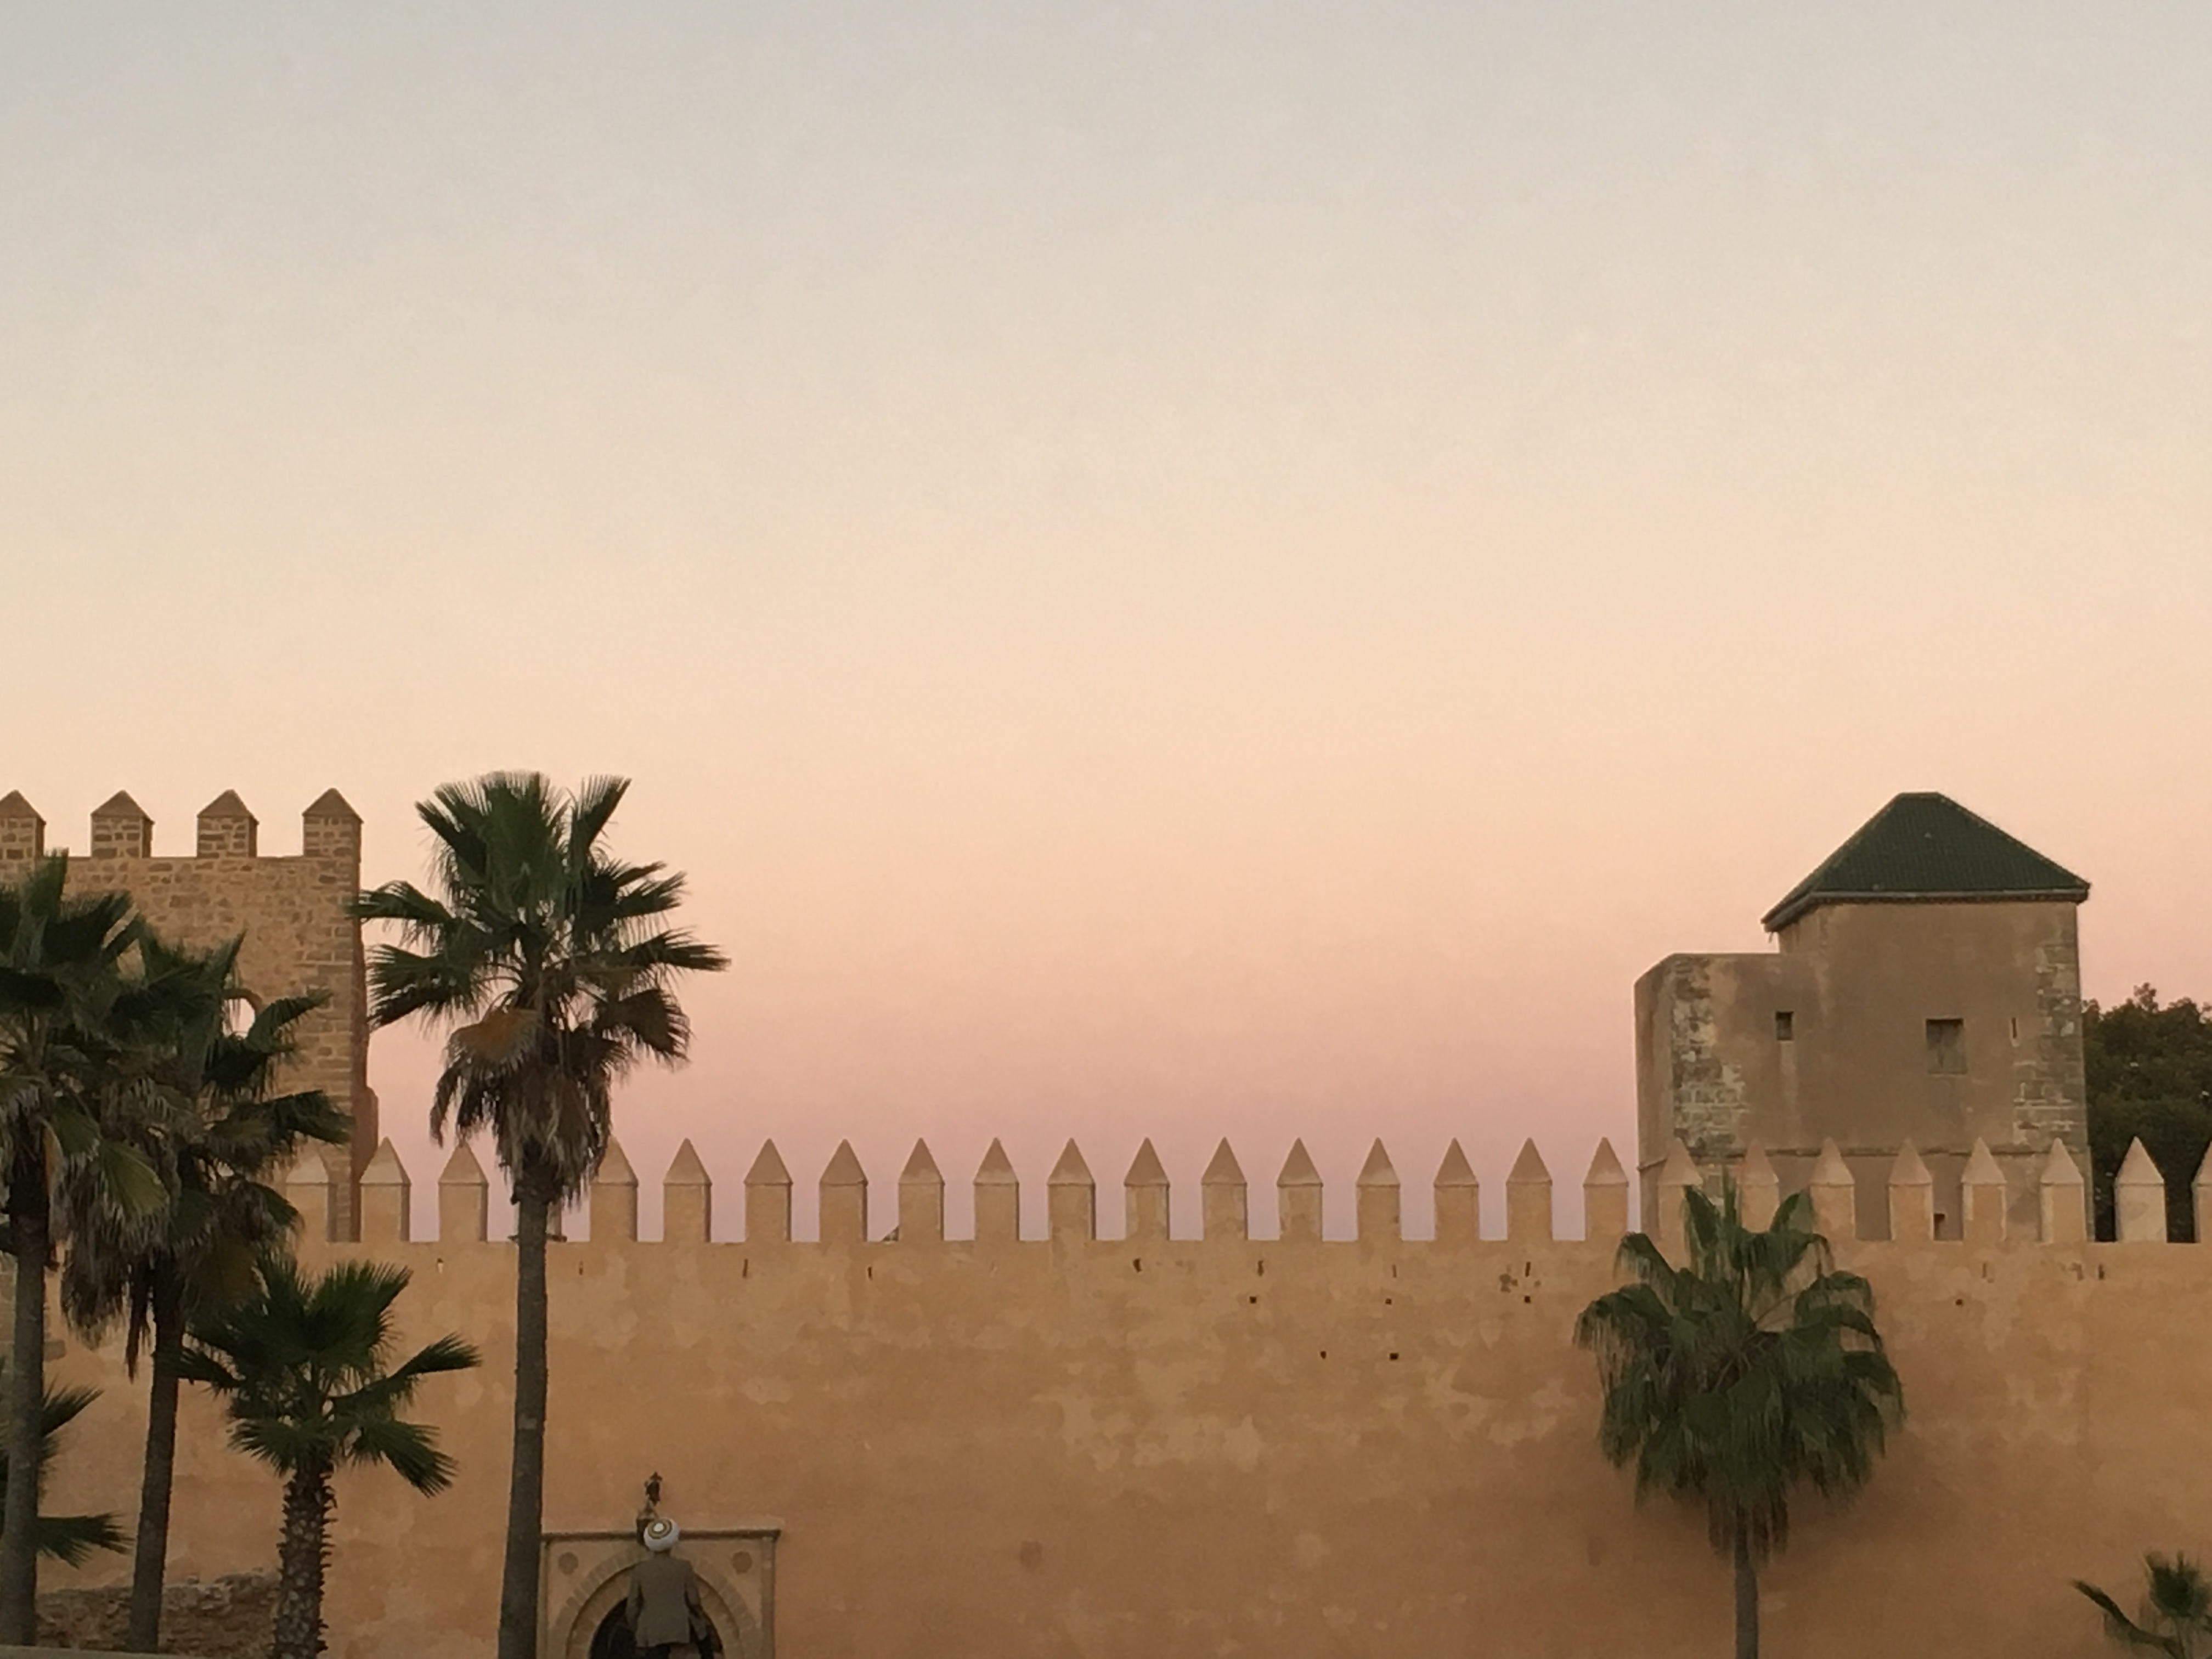 The sights of Rabat